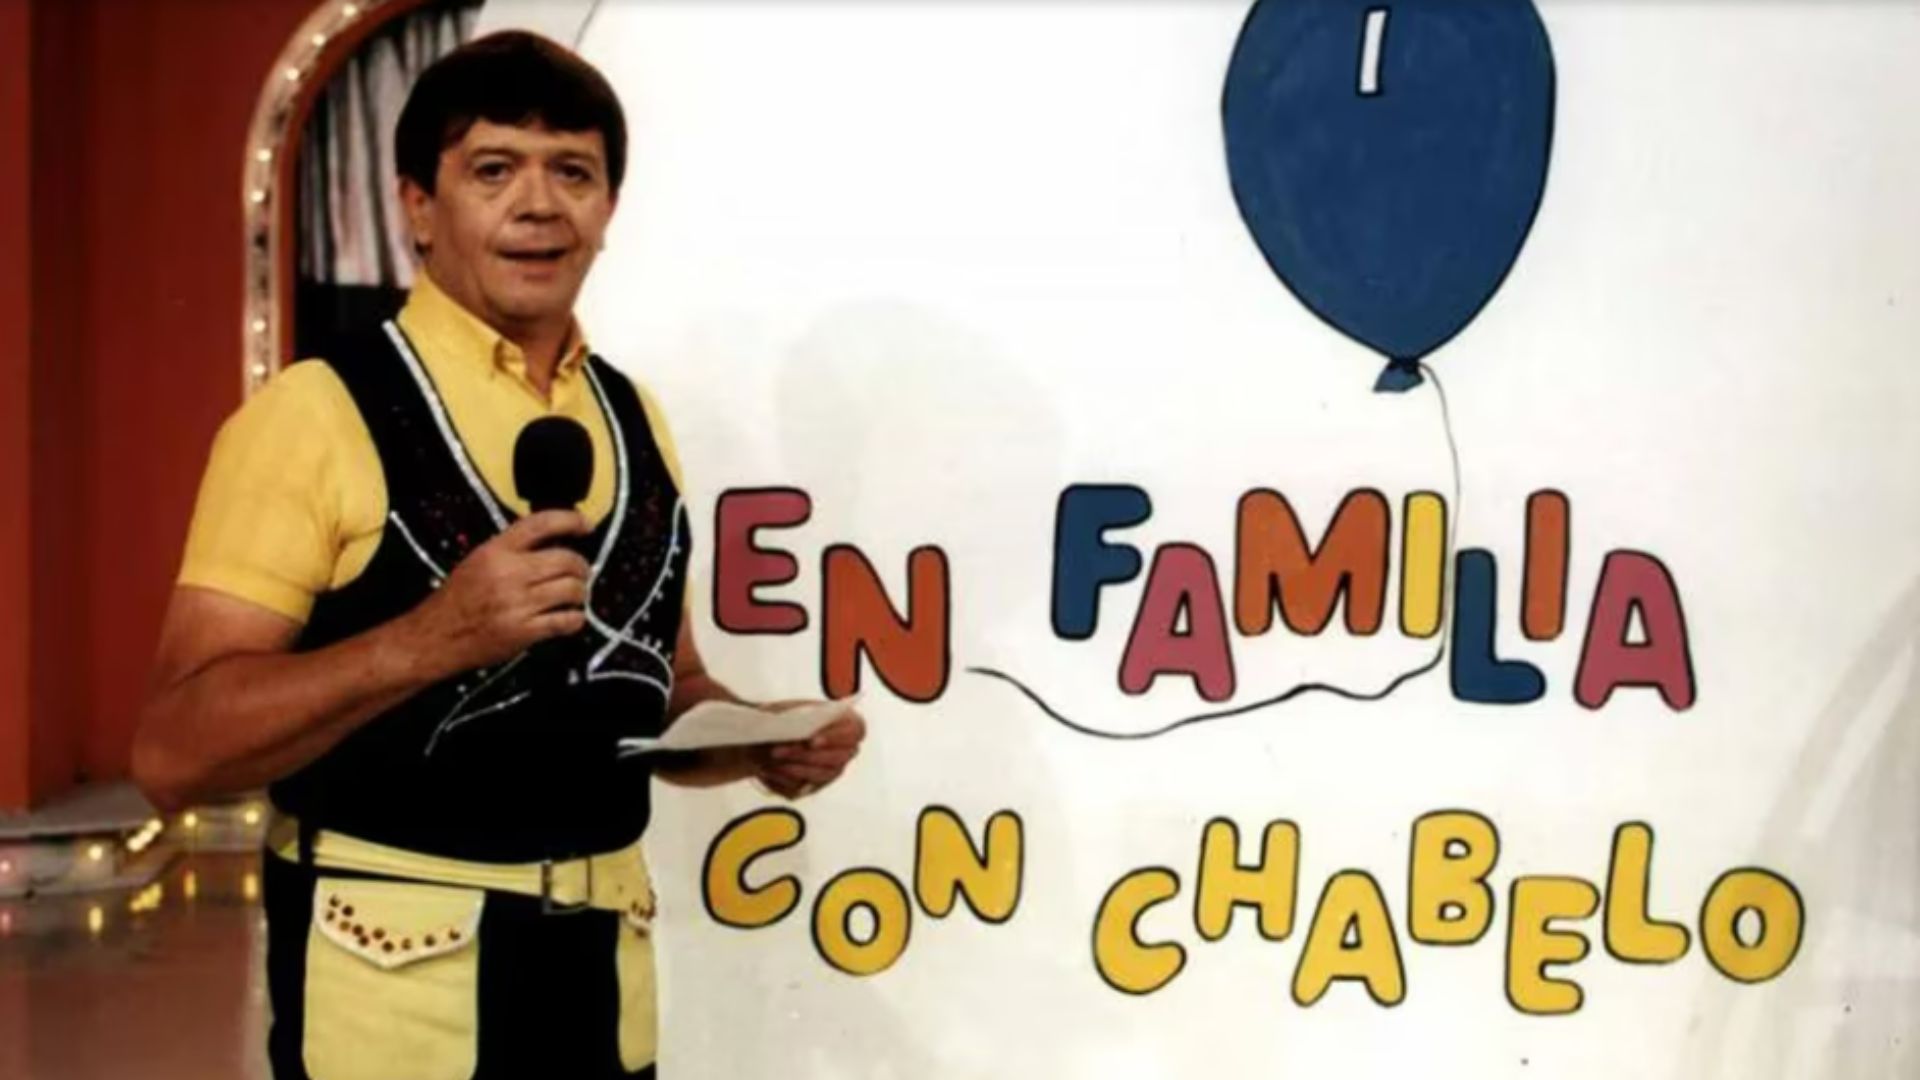 'En familia con Chabelo' fue uno de los programas con mayor duración en la historia de la televisión mexicana.